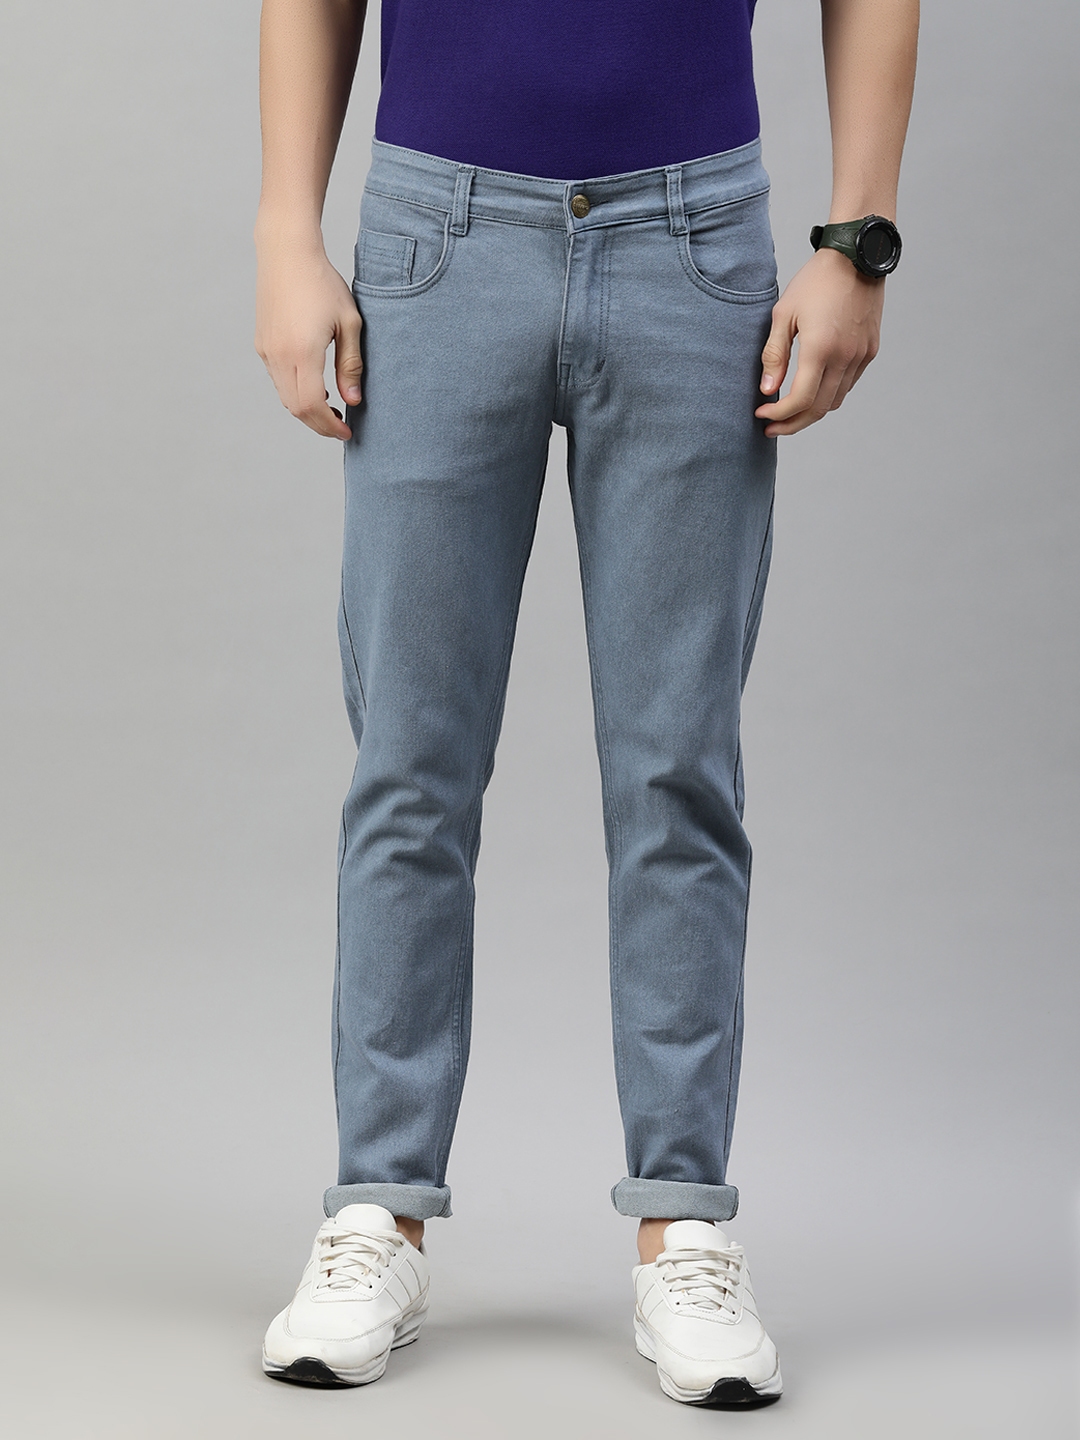 Urbano Plus Regular Men Light Blue Jeans - Buy Urbano Plus Regular Men Light  Blue Jeans Online at Best Prices in India